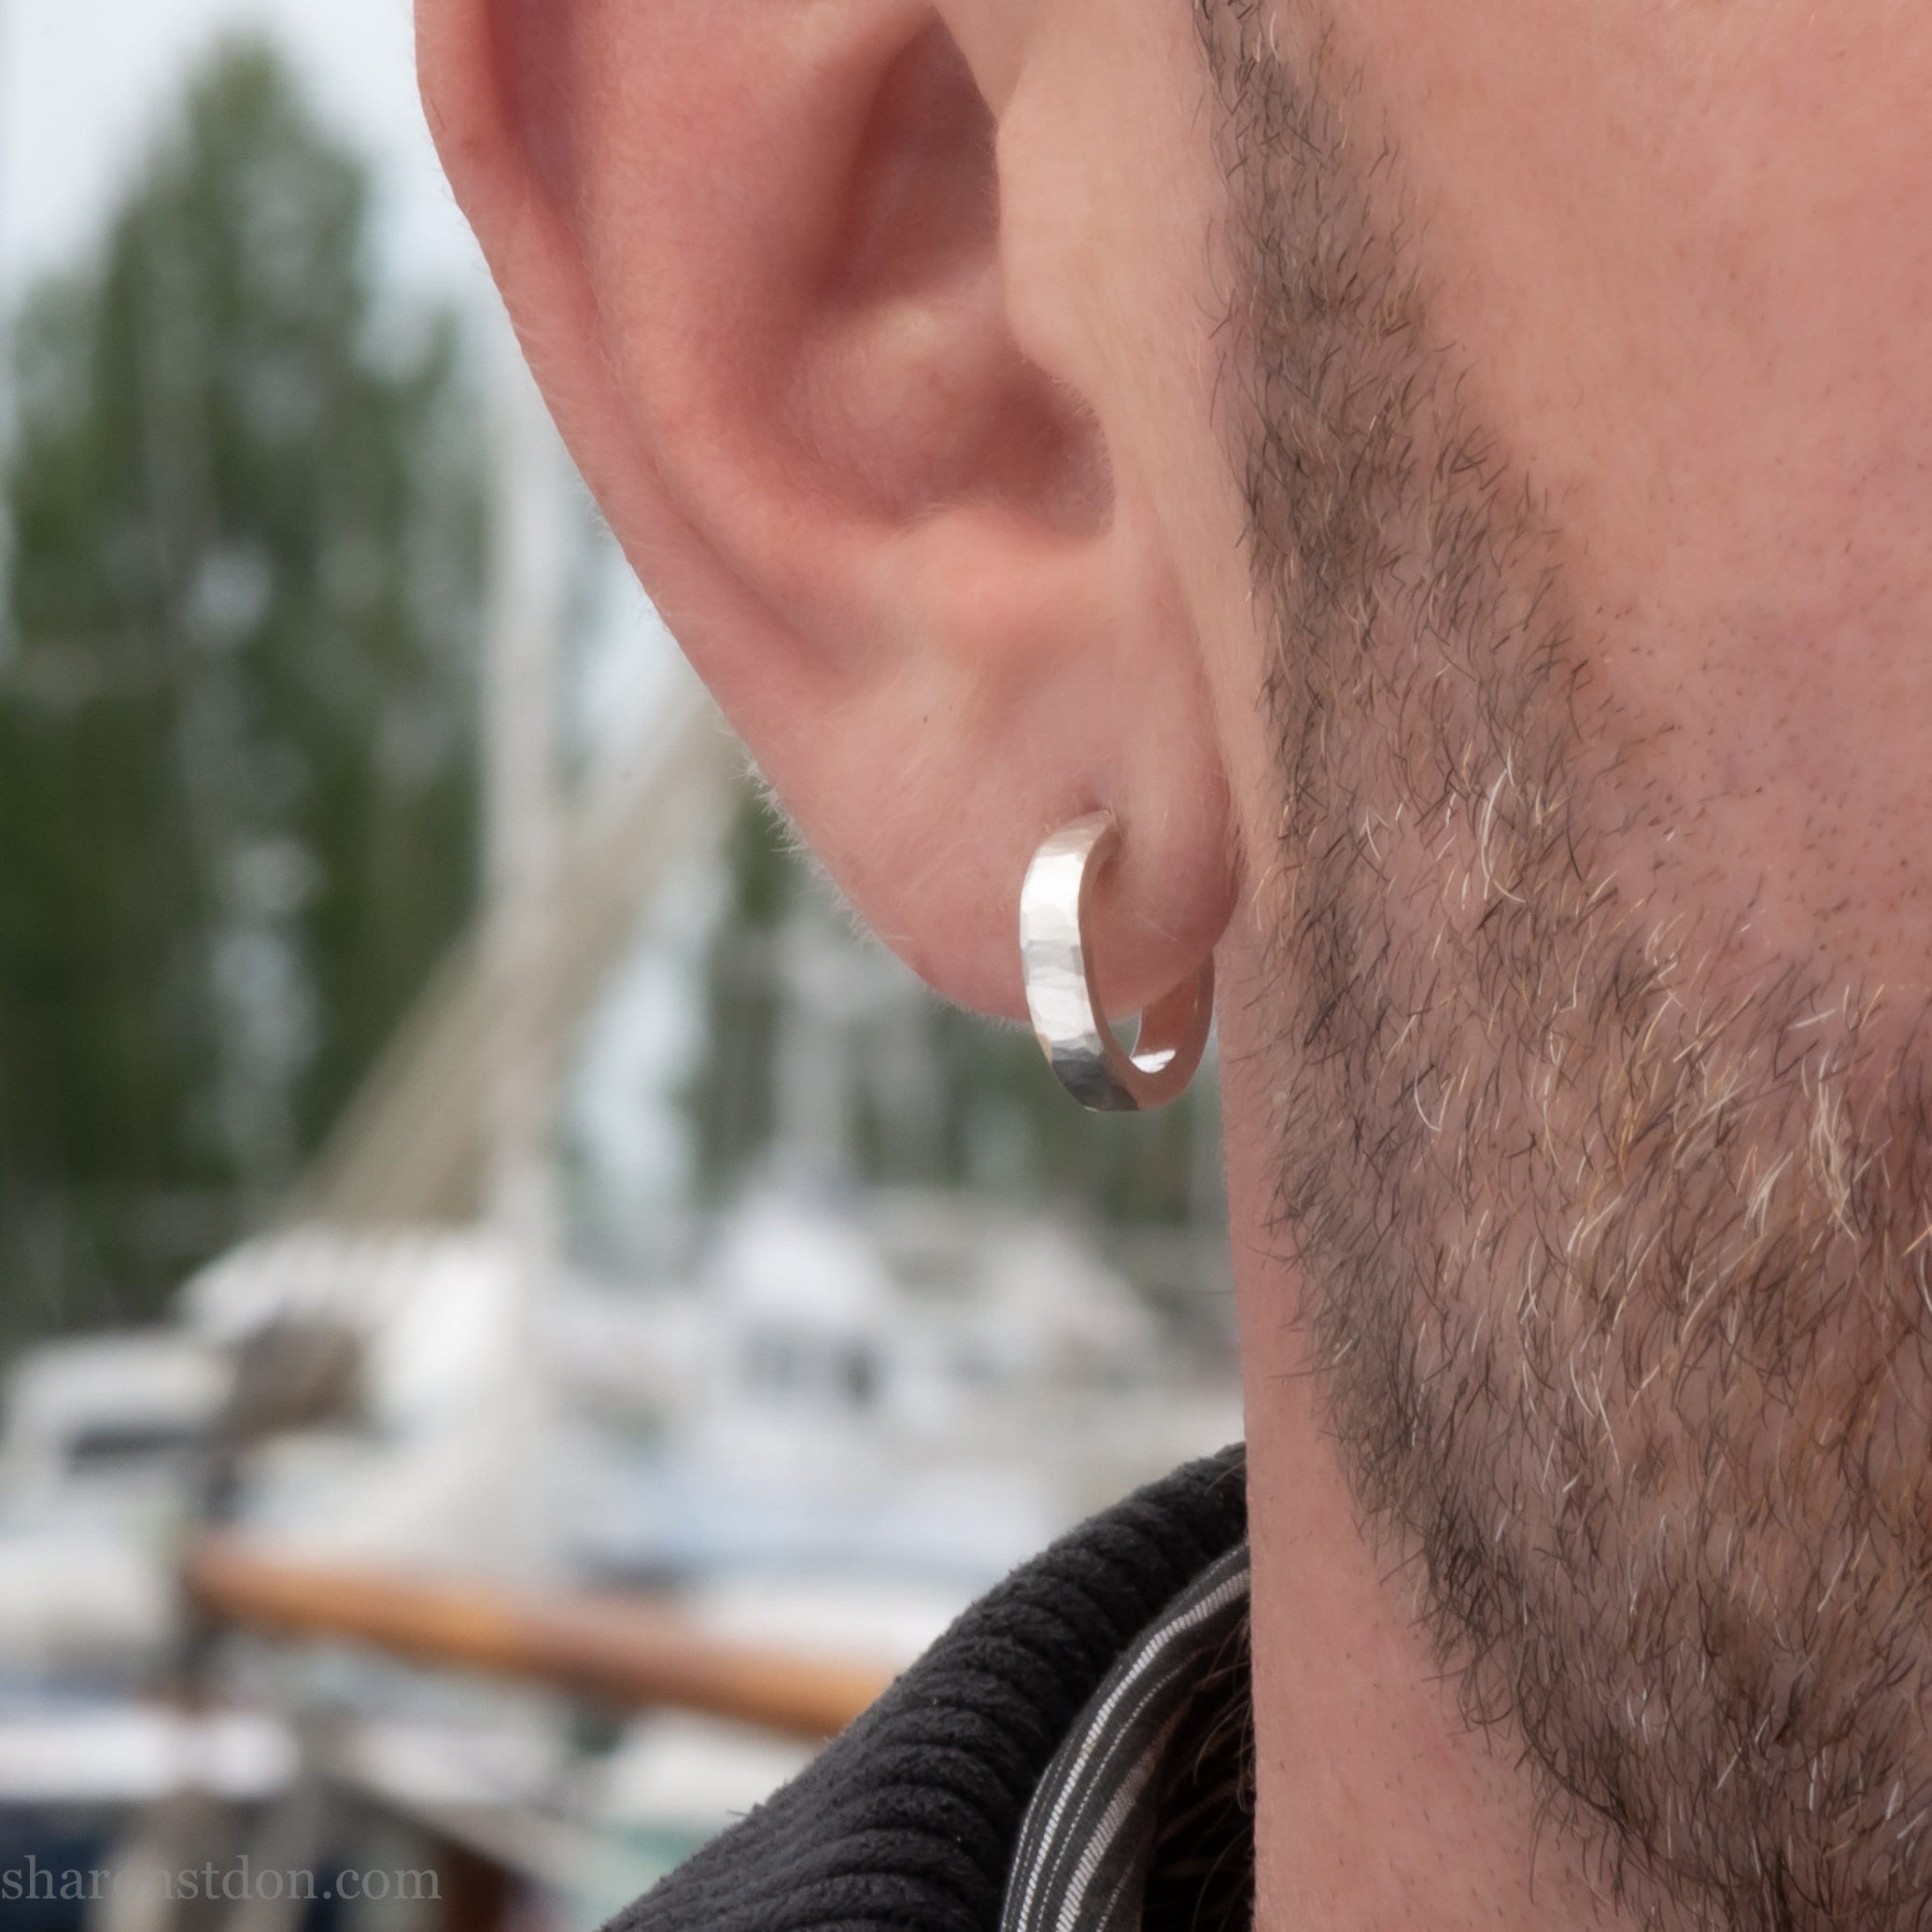 12 x 3mm small sterling silver hoop earrings – Sharon SaintDon